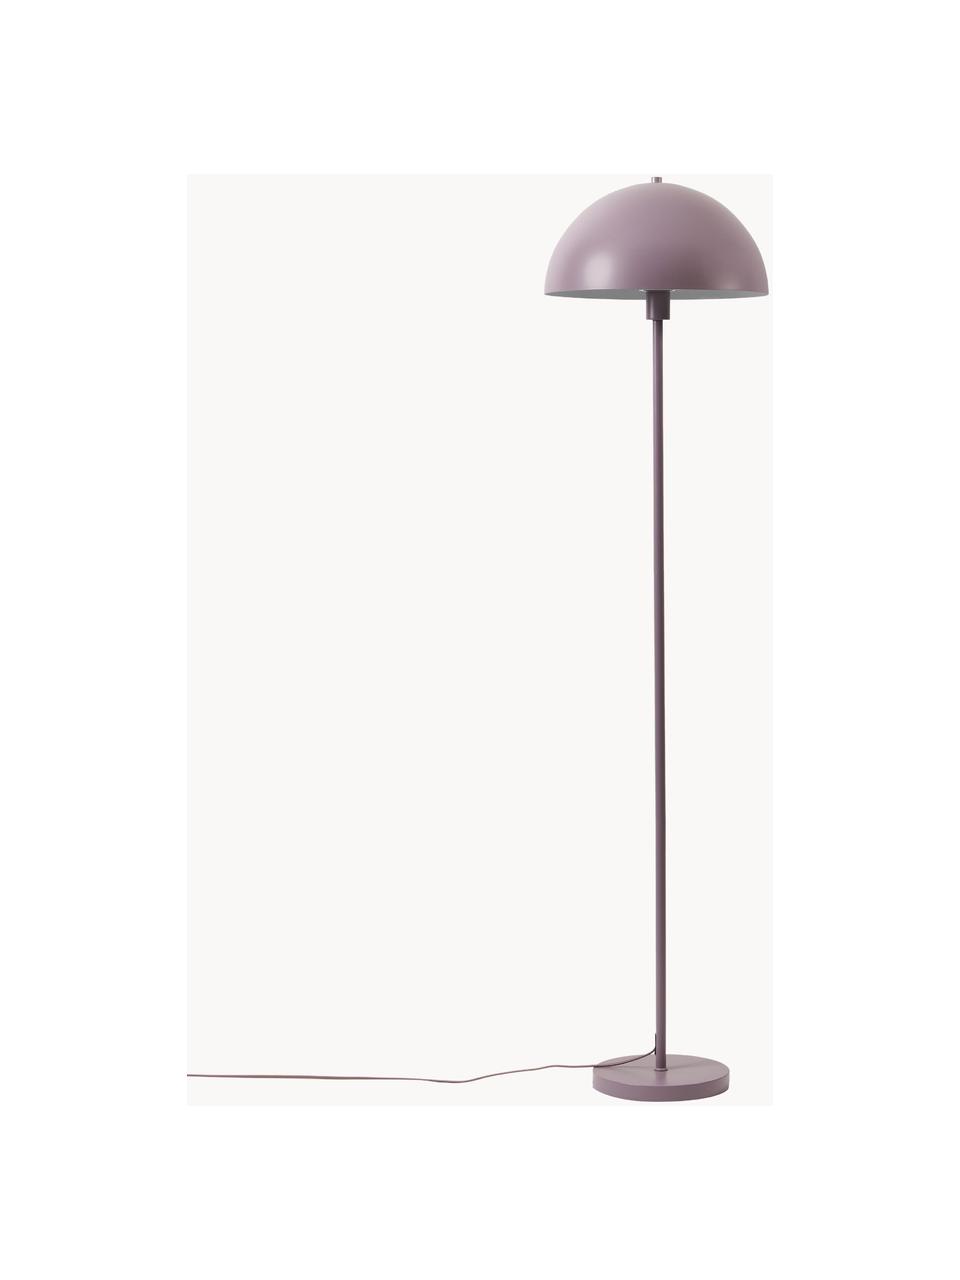 Stehlampe Matilda in Mauve, Lampenschirm: Metall, pulverbeschichtet, Lampenfuß: Metall, pulverbeschichtet, Lavendel, H 164 cm